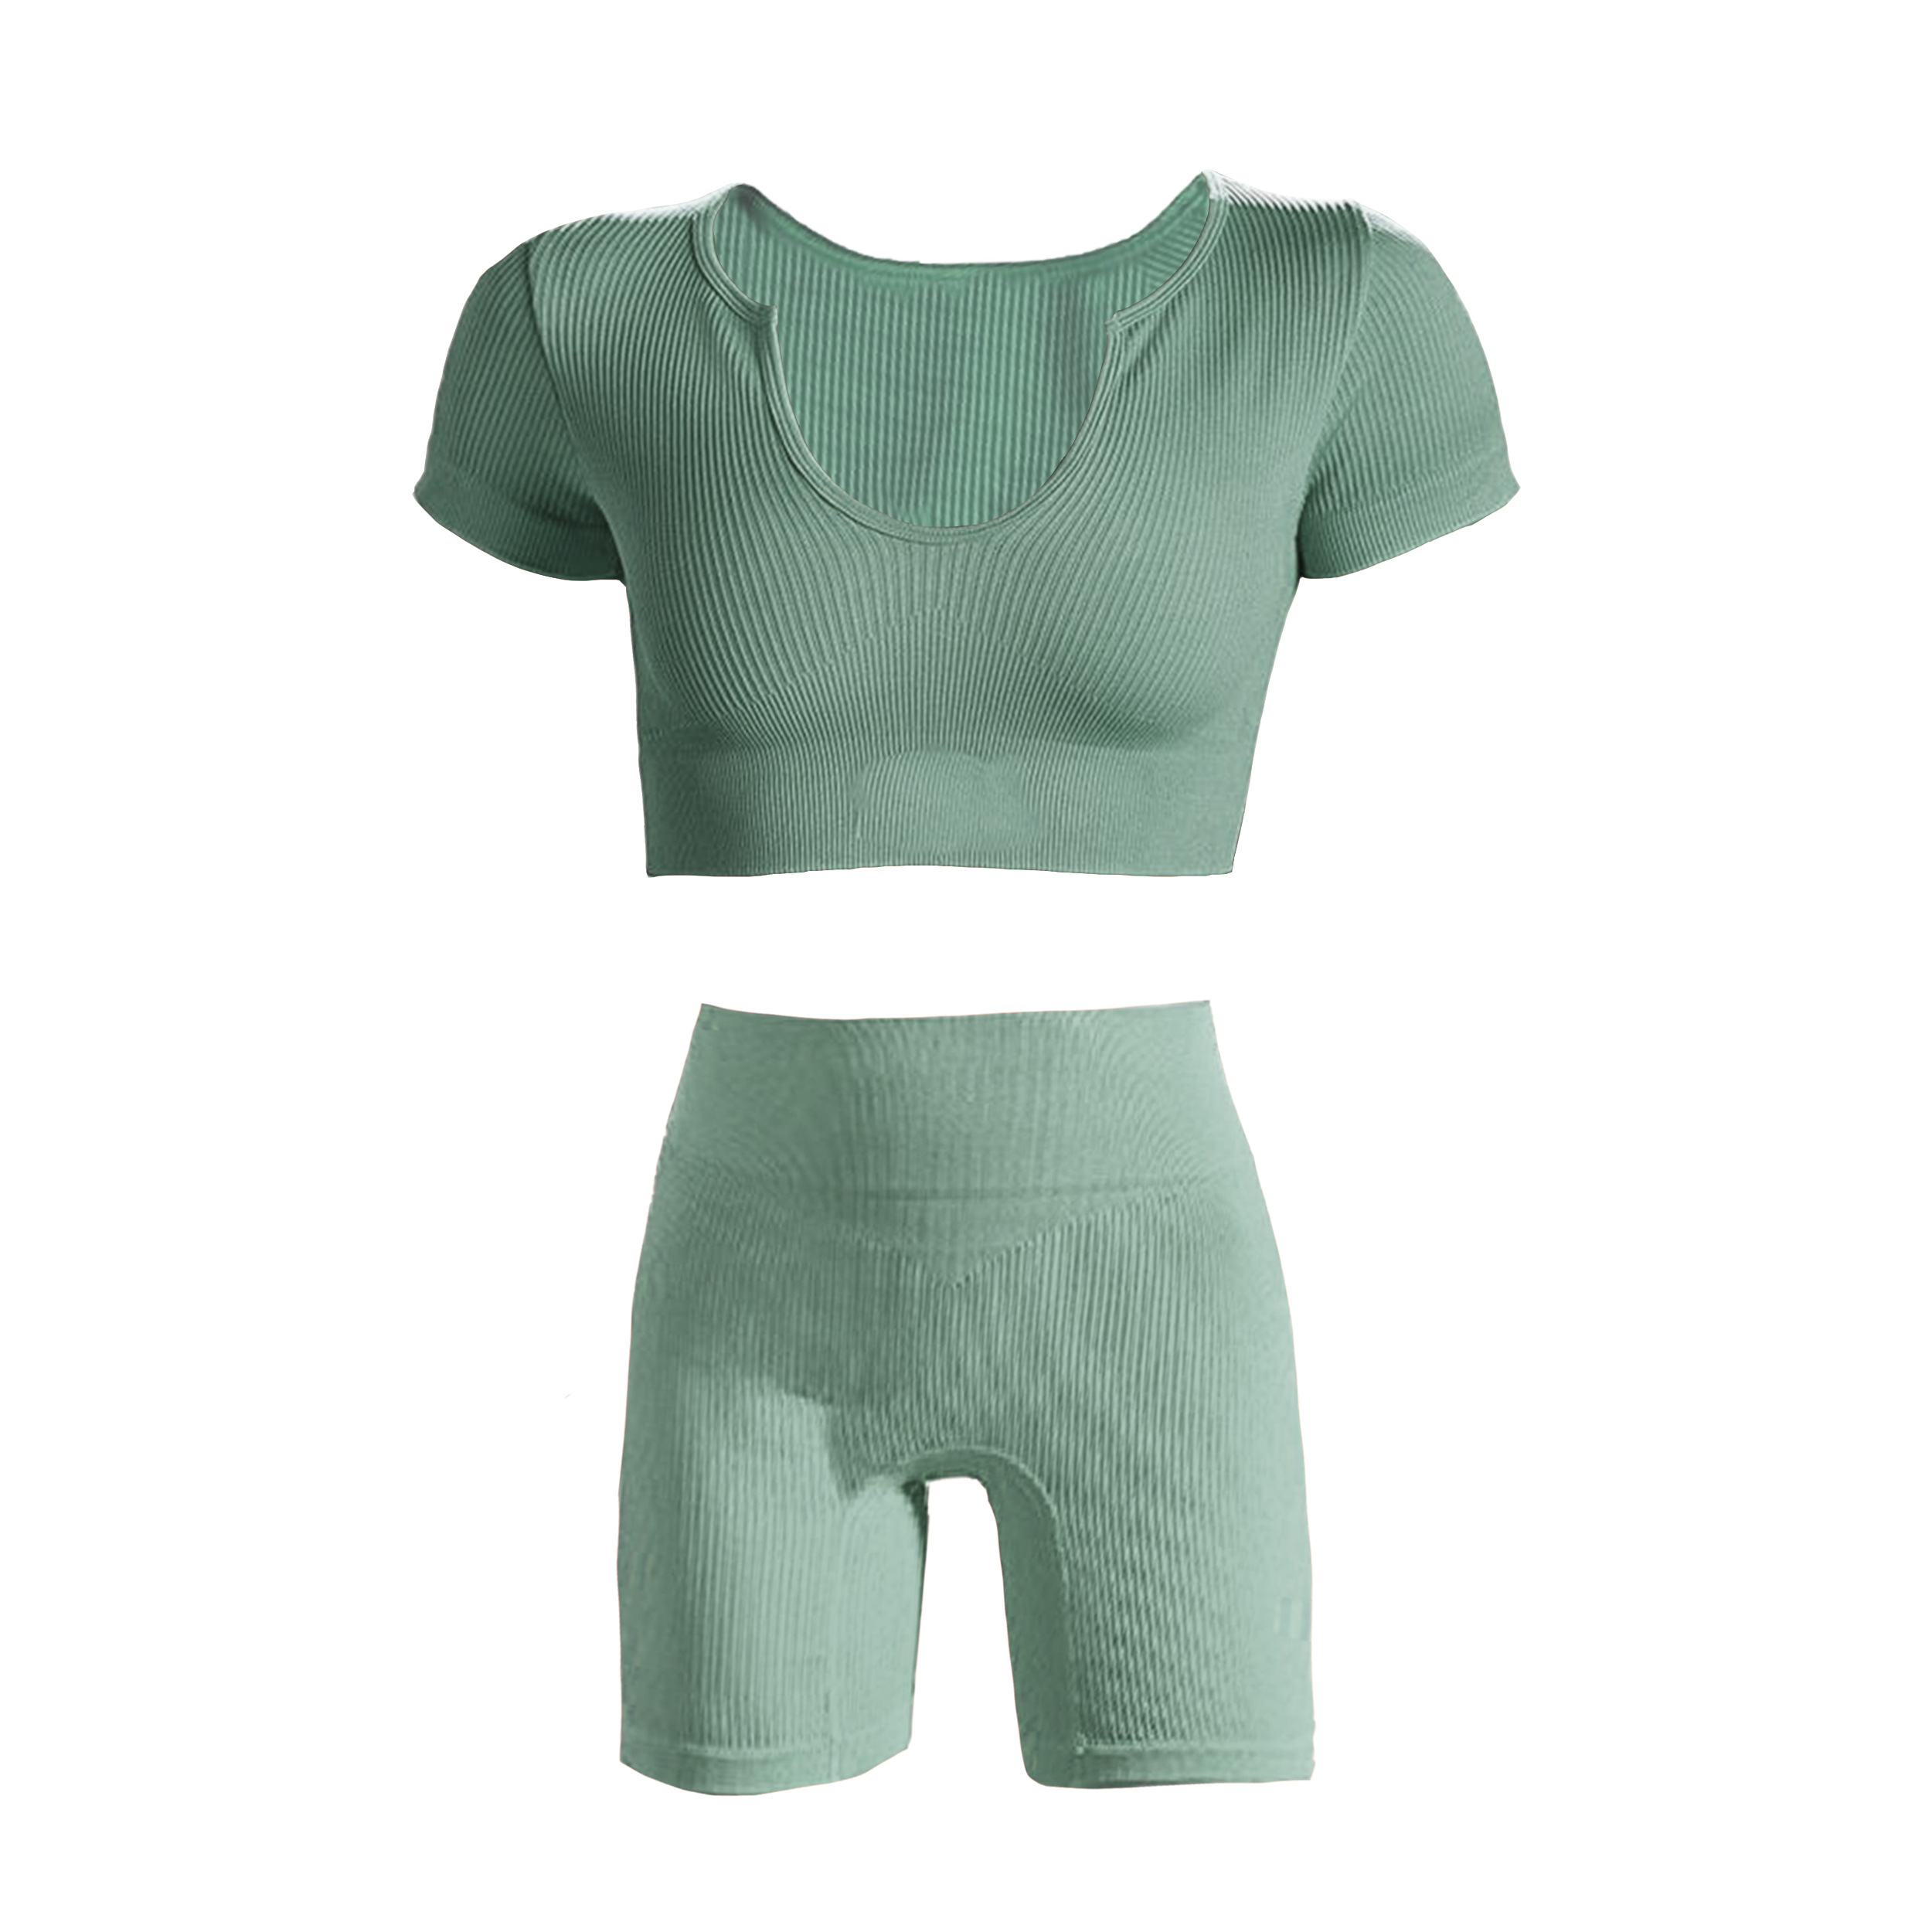 ✓ قیمت و مشخصات ست کراپ تاپ آستین کوتاه و شلوارک ورزشی زنانه مدل اسپرت یقهباز رنگ سبز - زیراکو ✓